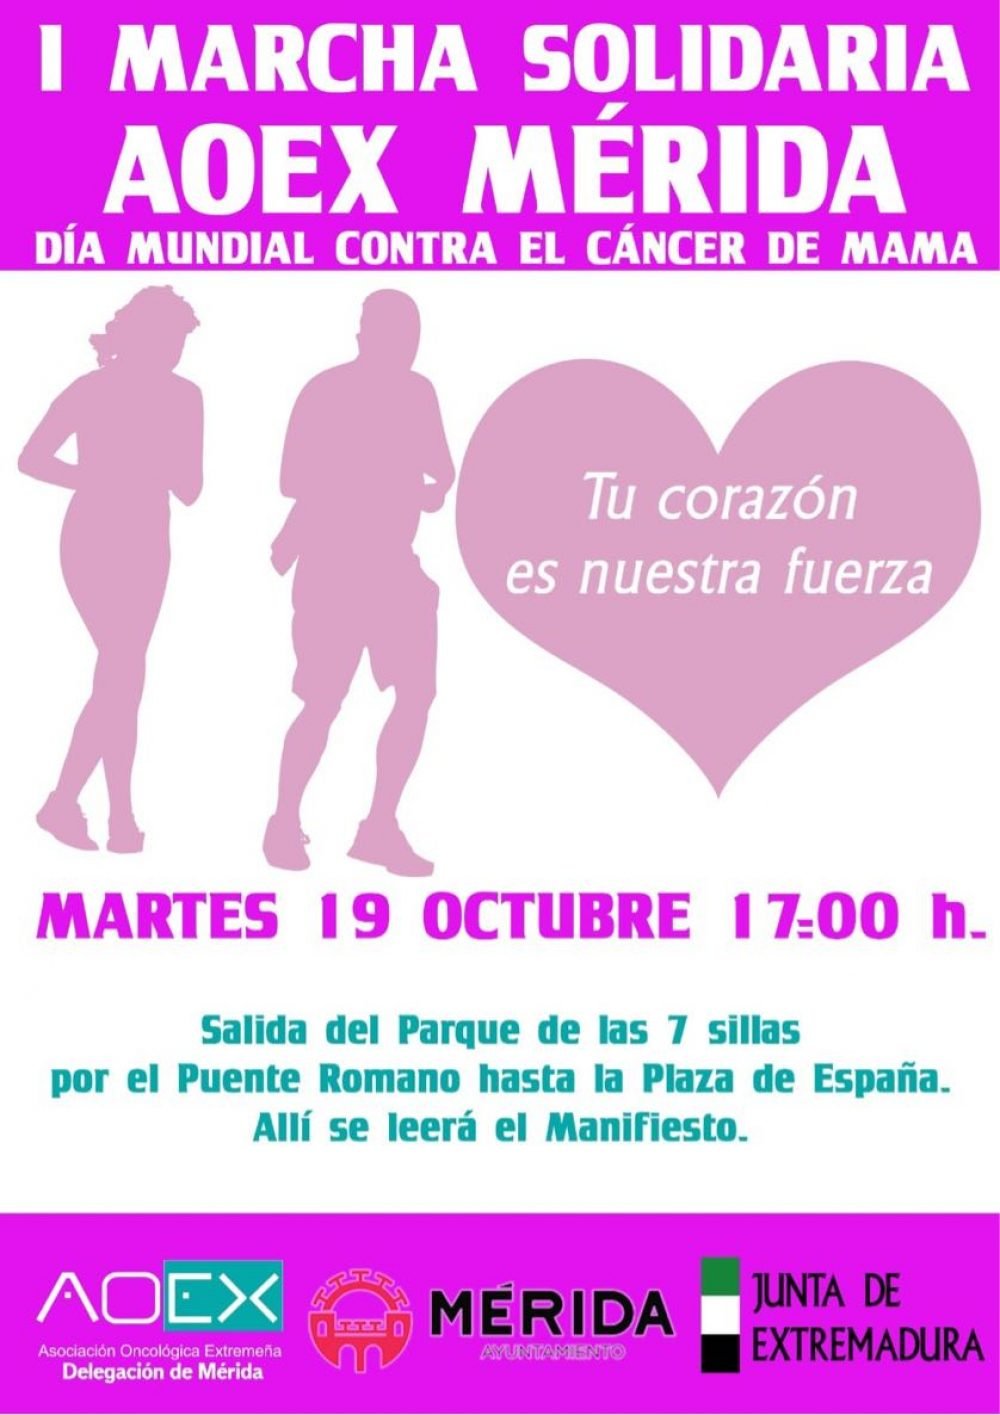 I Marcha Solidaria AOEX Mérida (Día Mundial Contra el Cáncer de Mama)